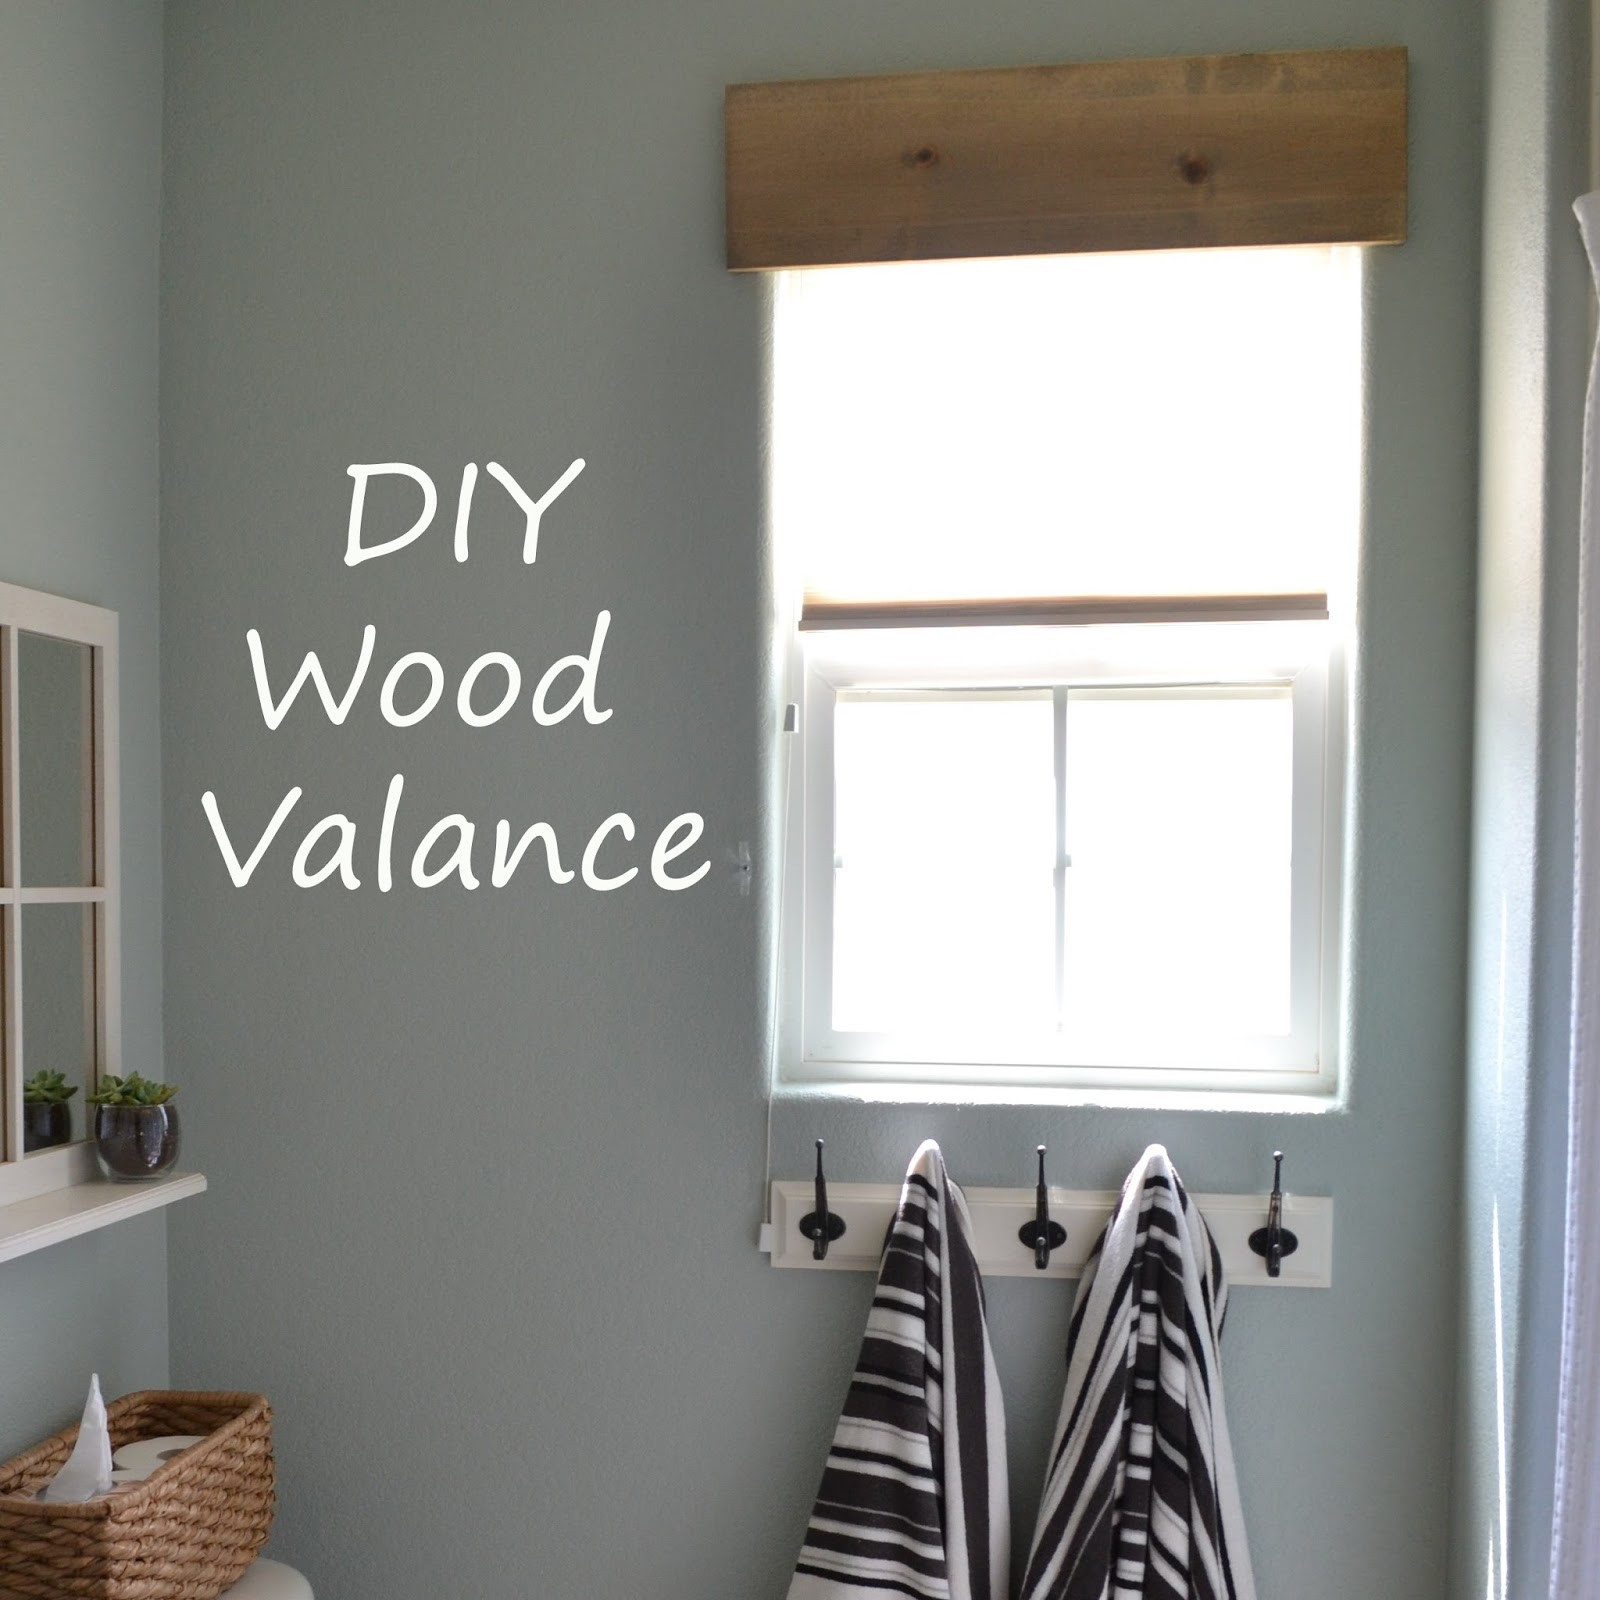 DIY Wooden Valance
 Making Wood Valance Plans DIY Free Download platform bed